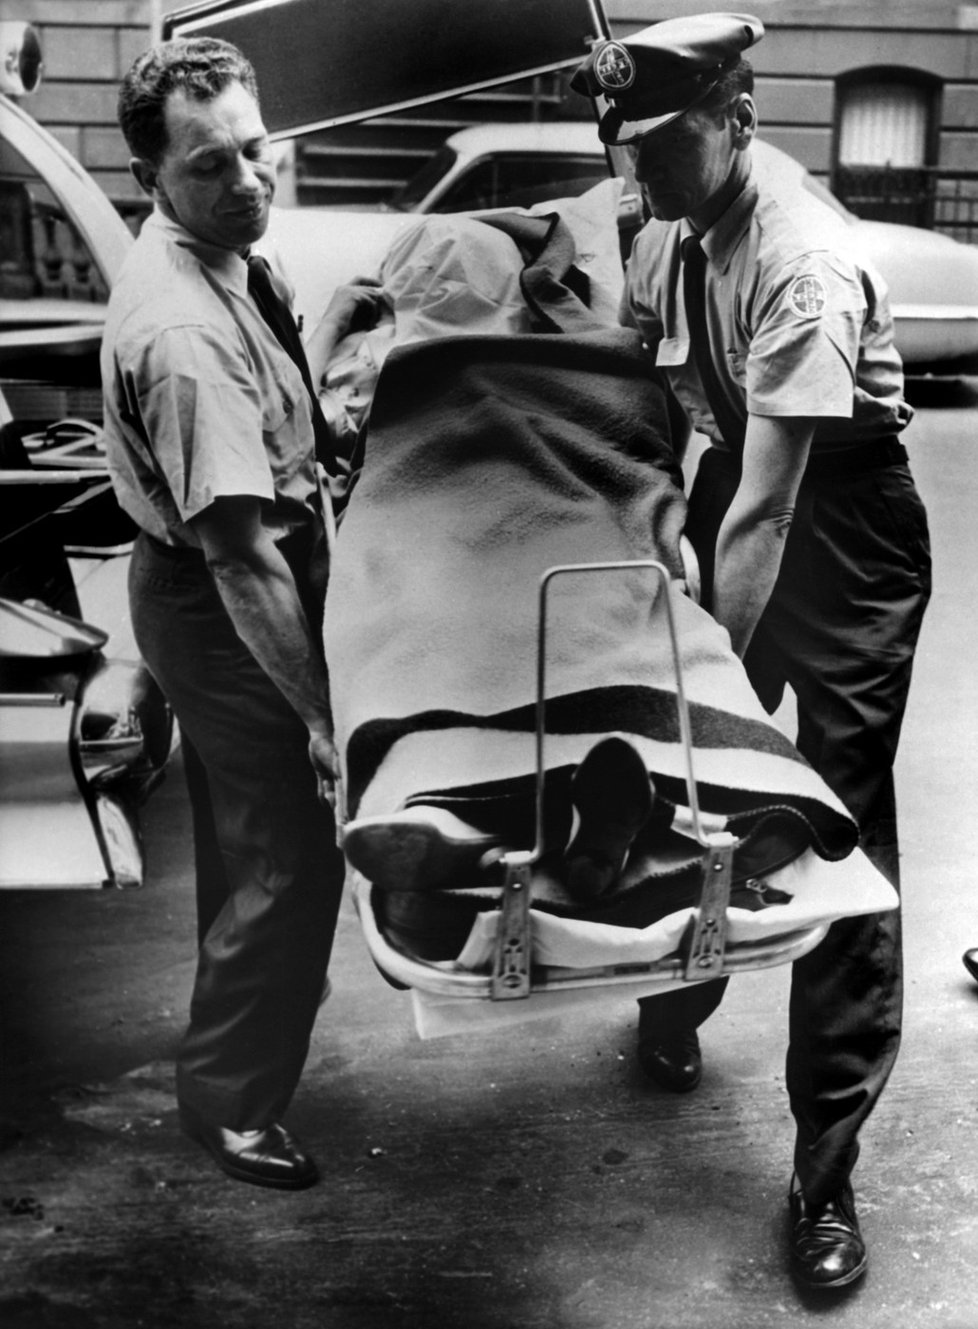 Tělo Marilyn nakládají do vozu k převozu do márnice.